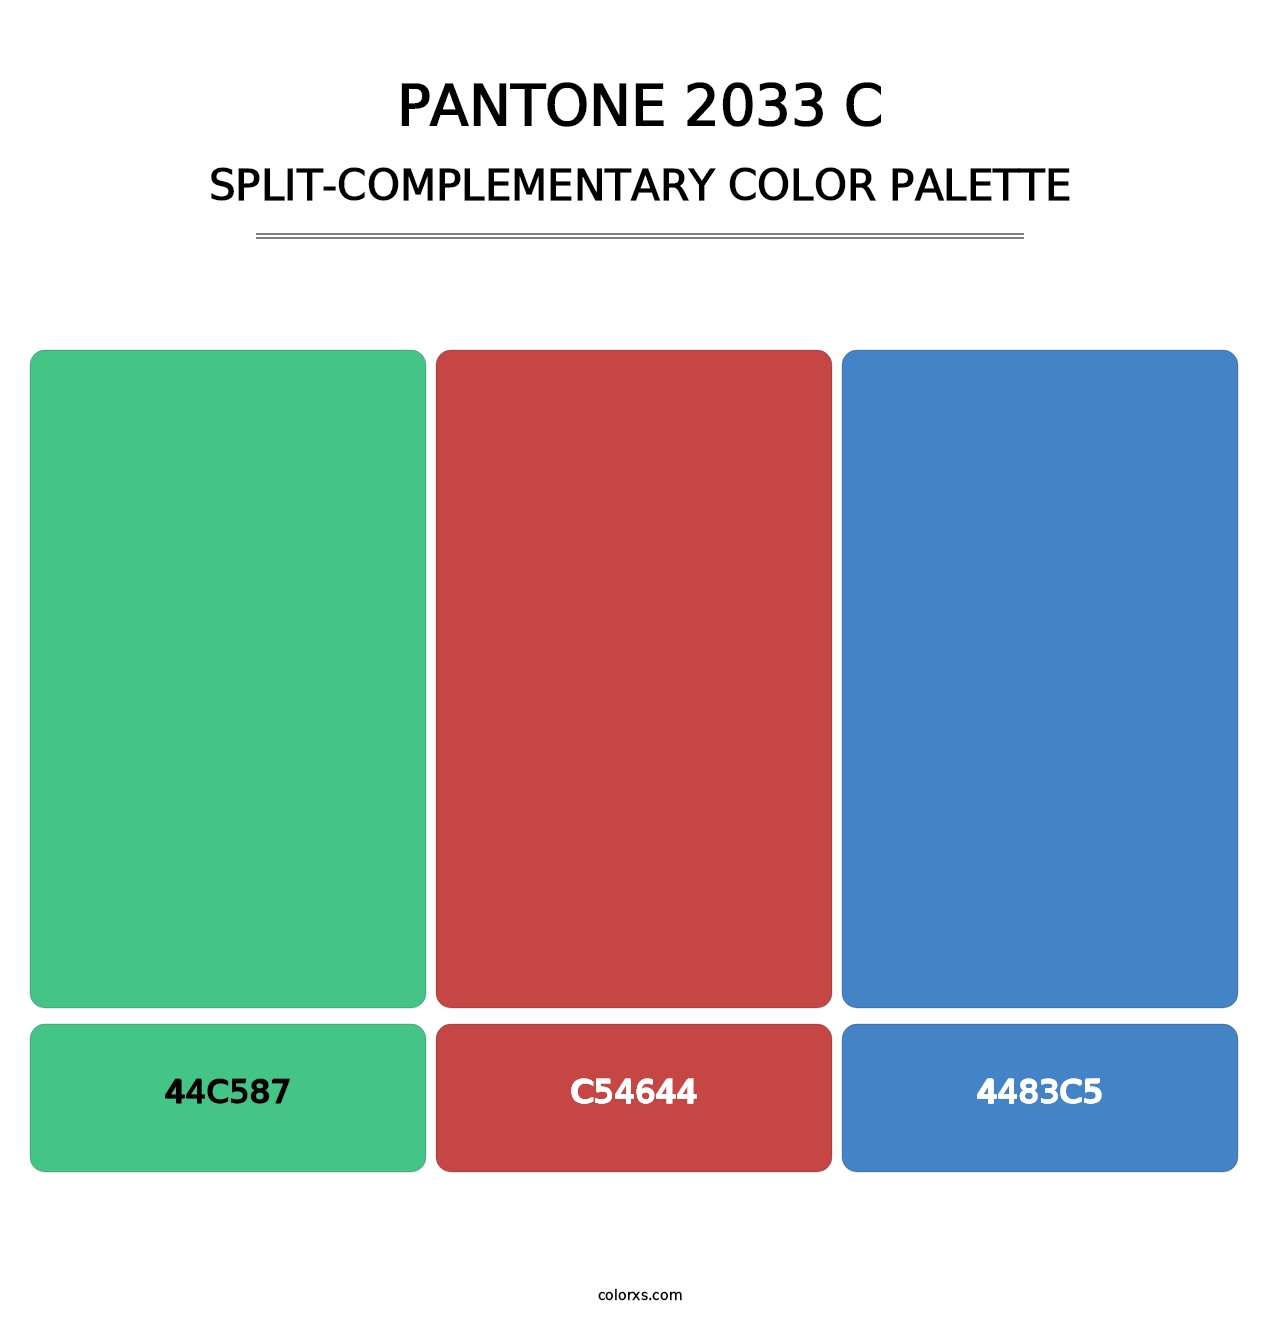 PANTONE 2033 C - Split-Complementary Color Palette